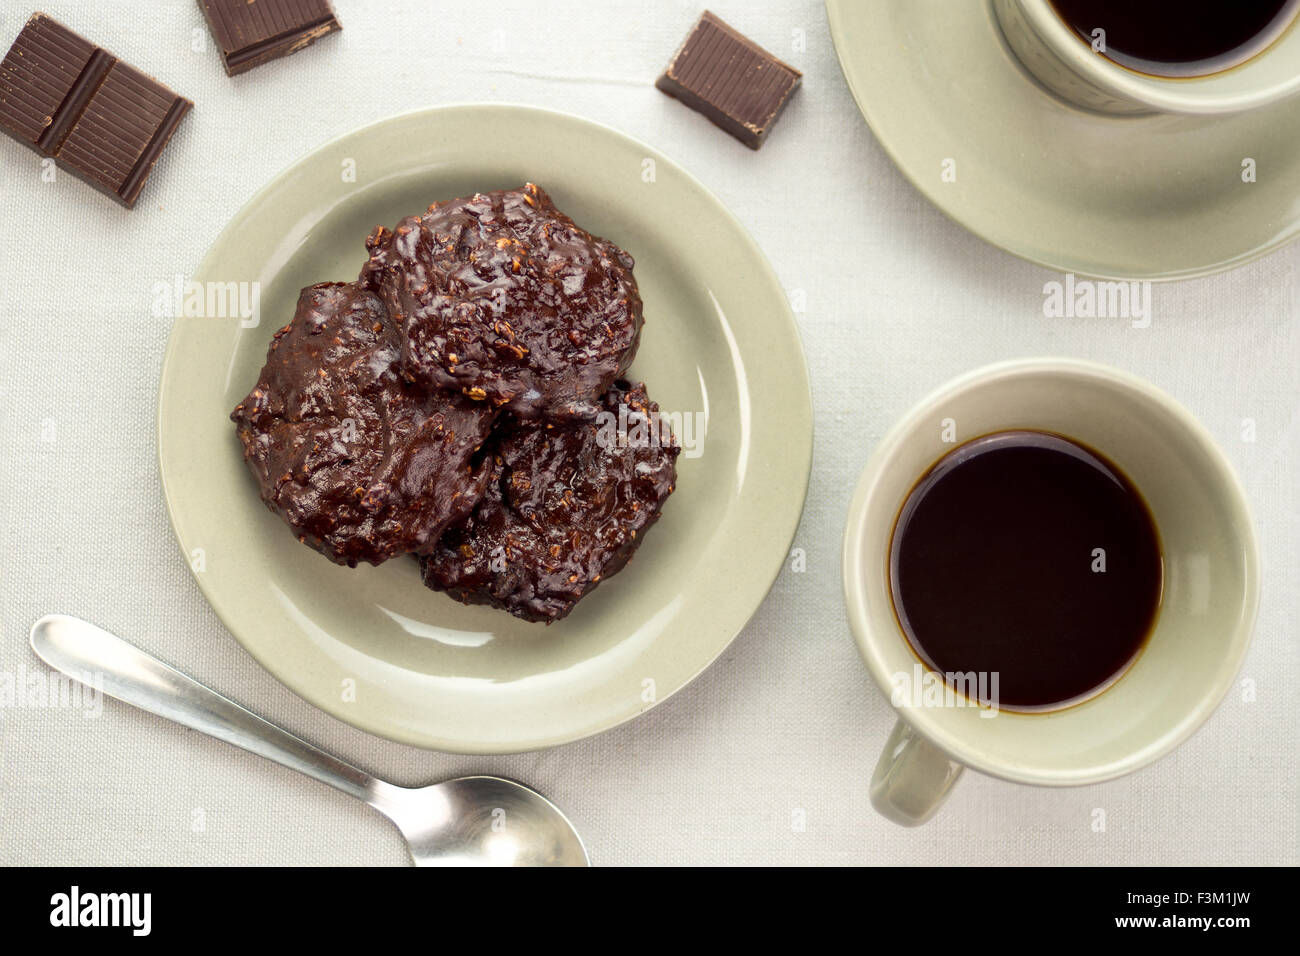 Ricca di biscotti al cioccolato in un piattino accanto a tazze di caffè nero e pezzetti di cioccolato Foto Stock